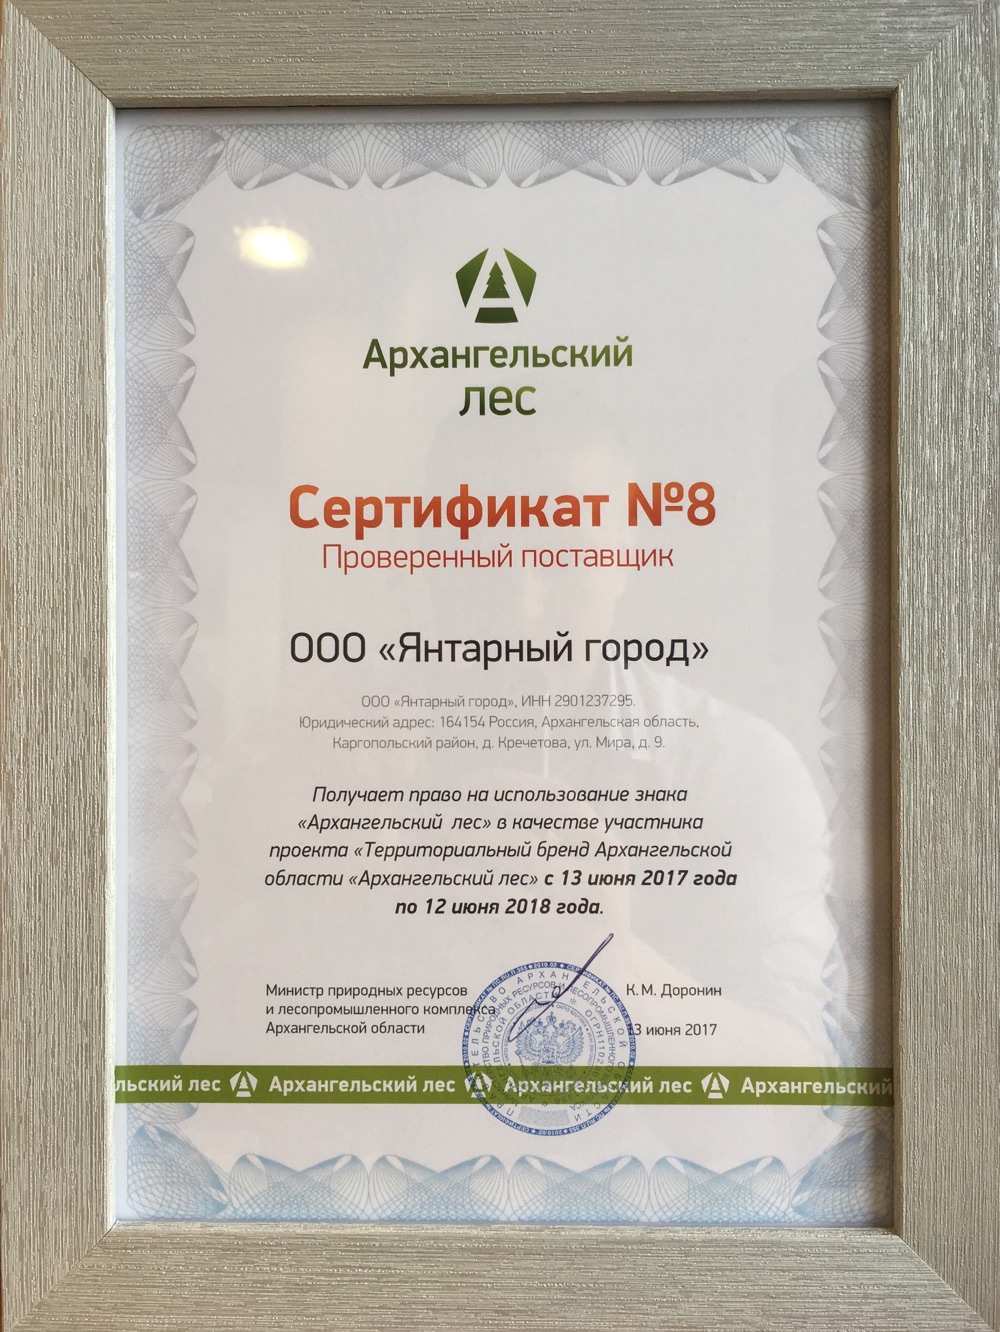 Сертификат проверенный поставщик Архангельской области